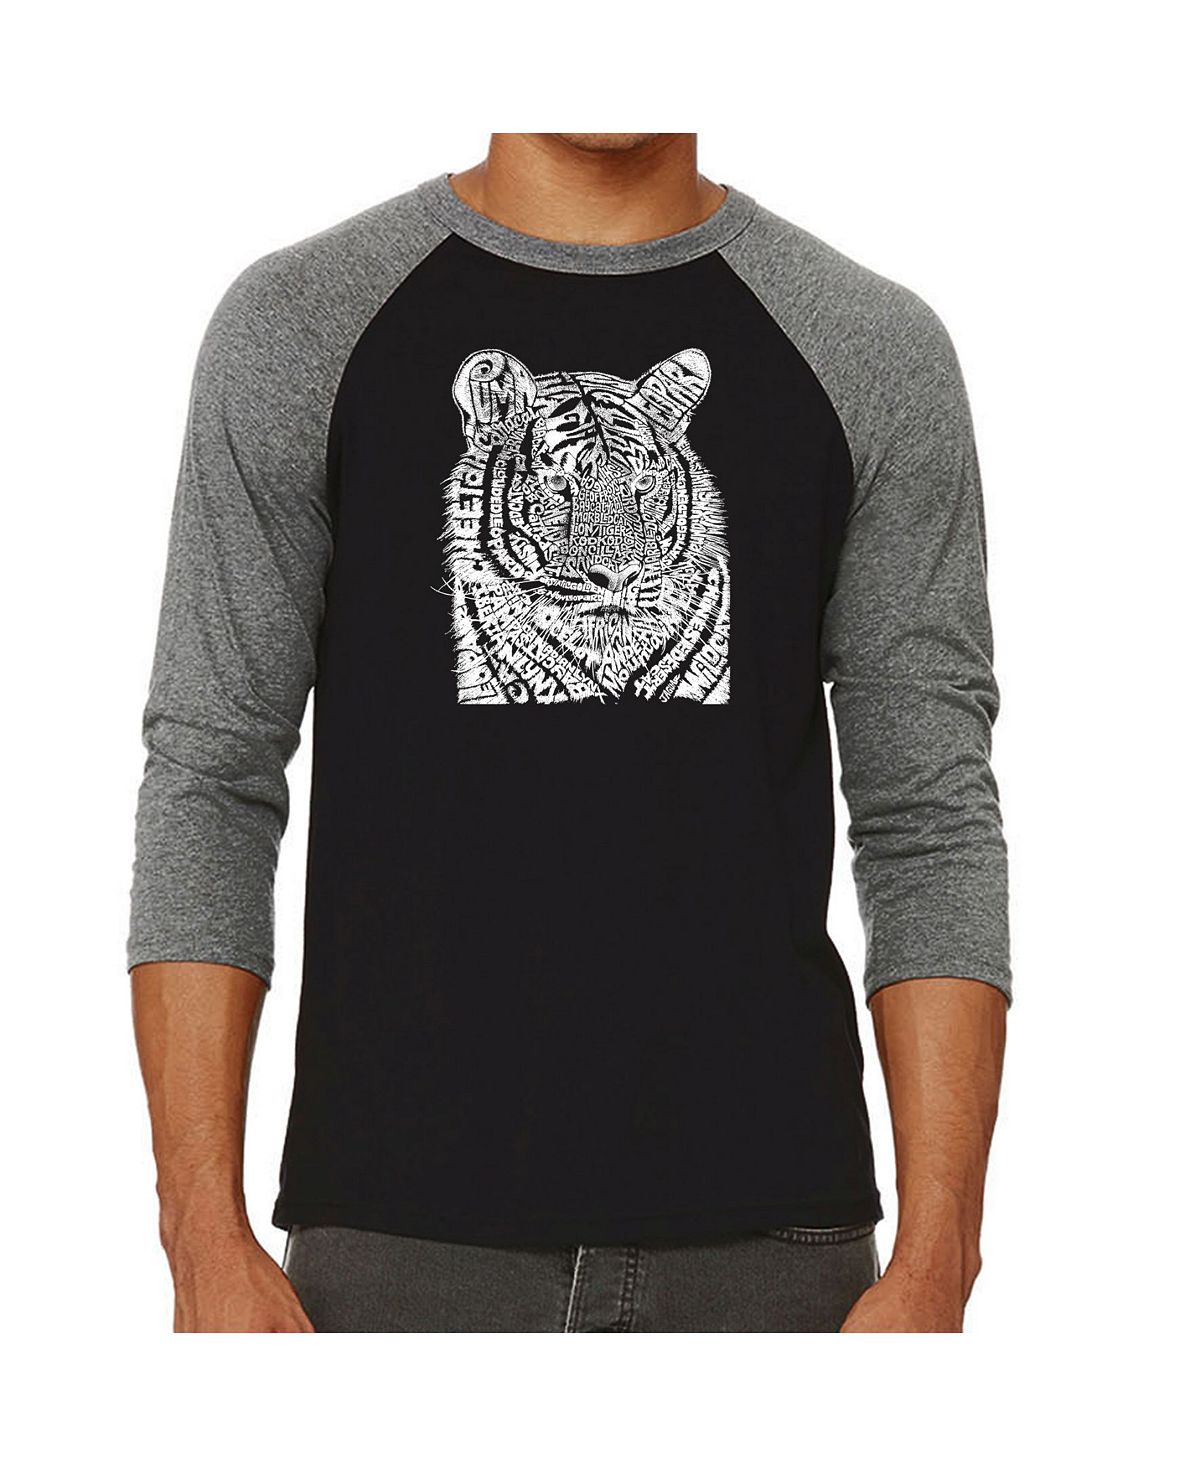 Мужская футболка с надписью big cats реглан word art LA Pop Art, серый